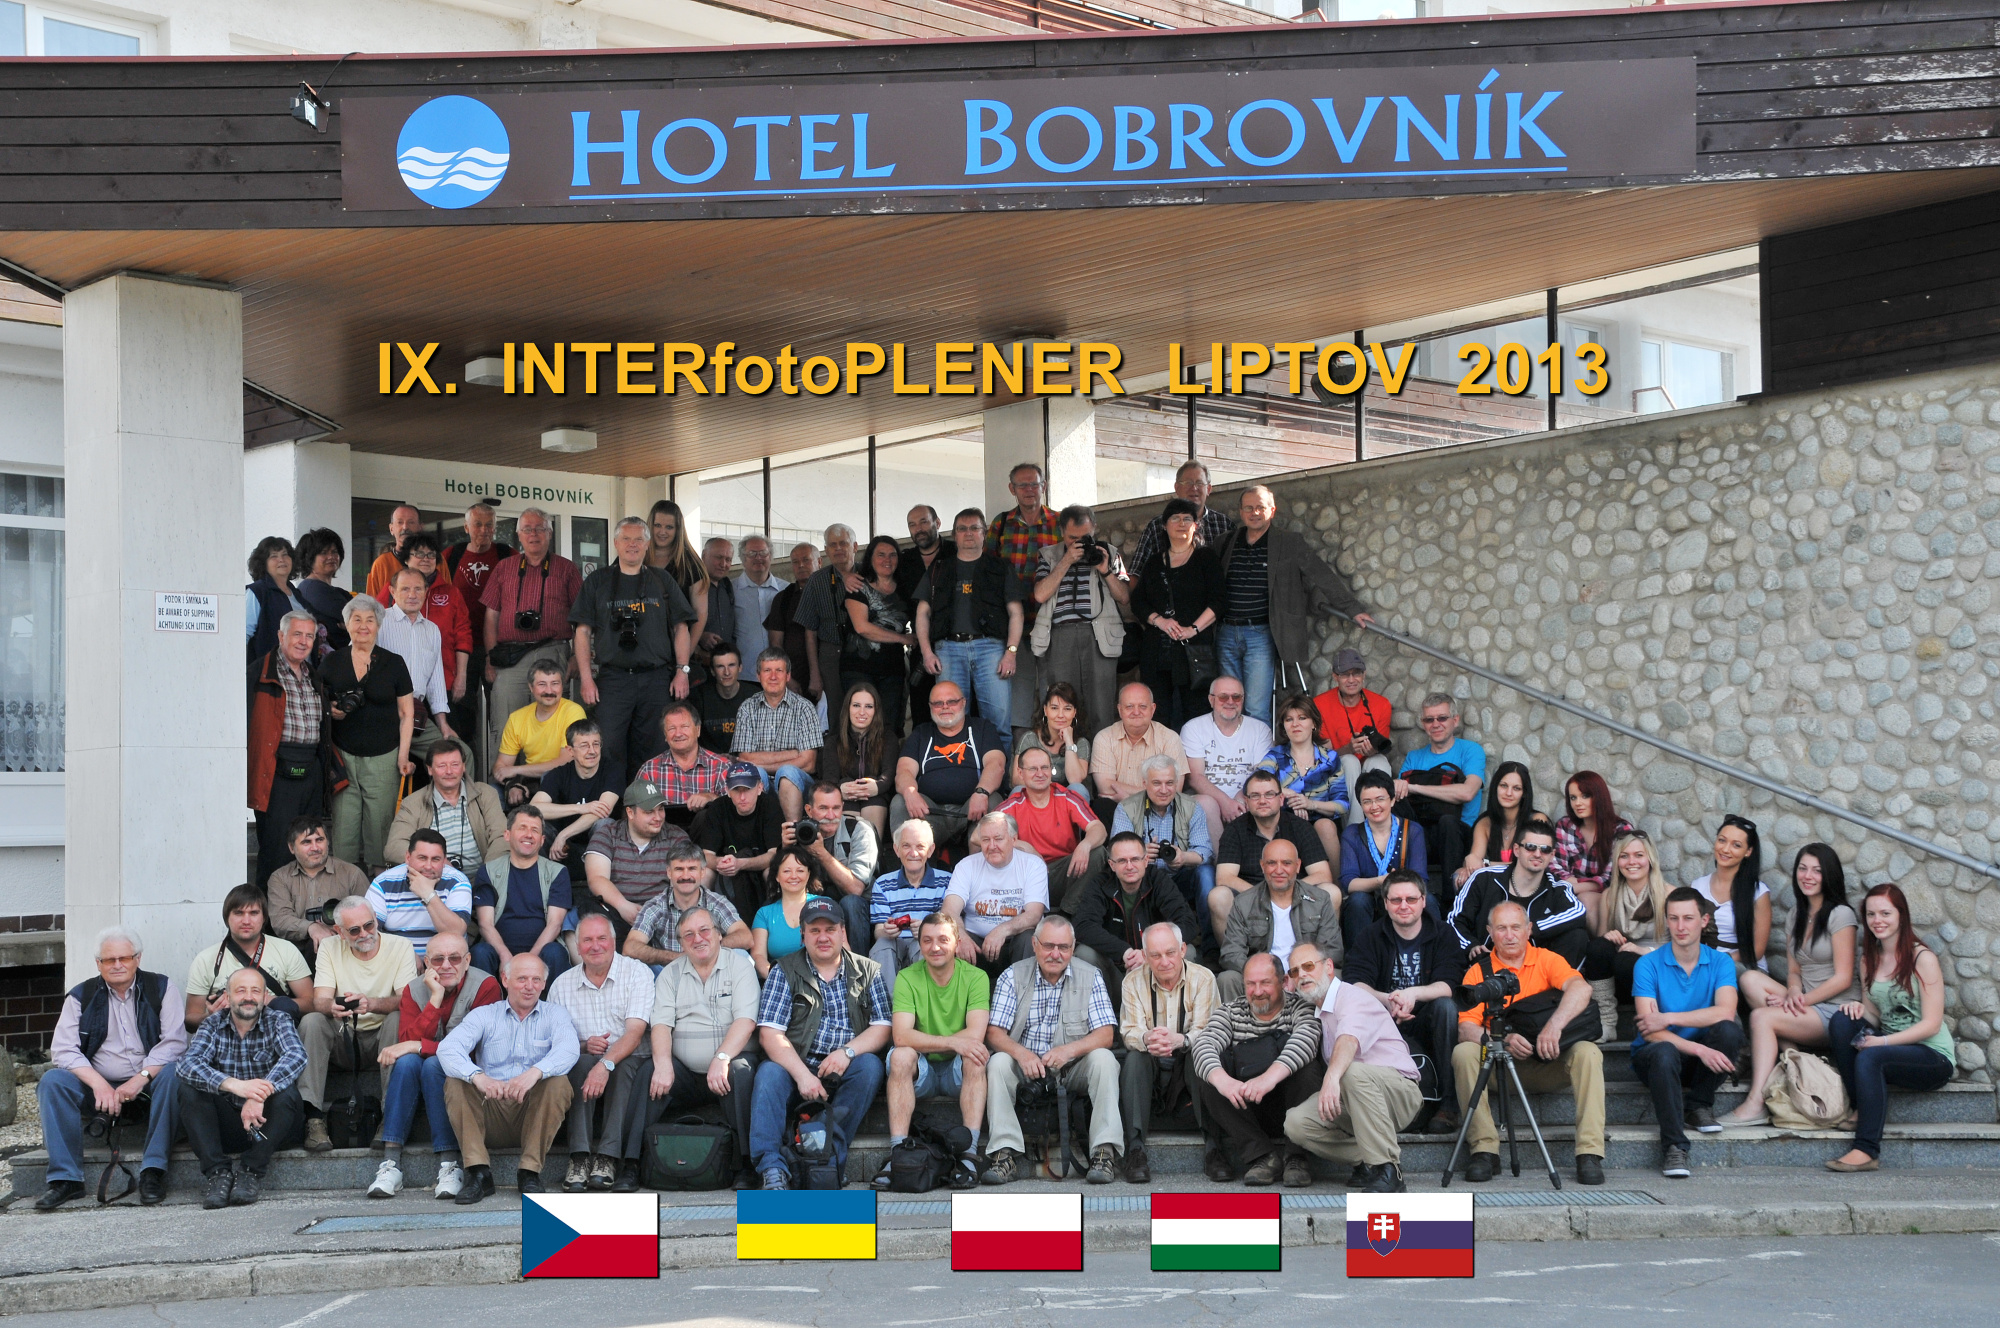 Закарпатські фотохудожники взяли участь у міжнародному фотопленері в Словаччині (ФОТО)